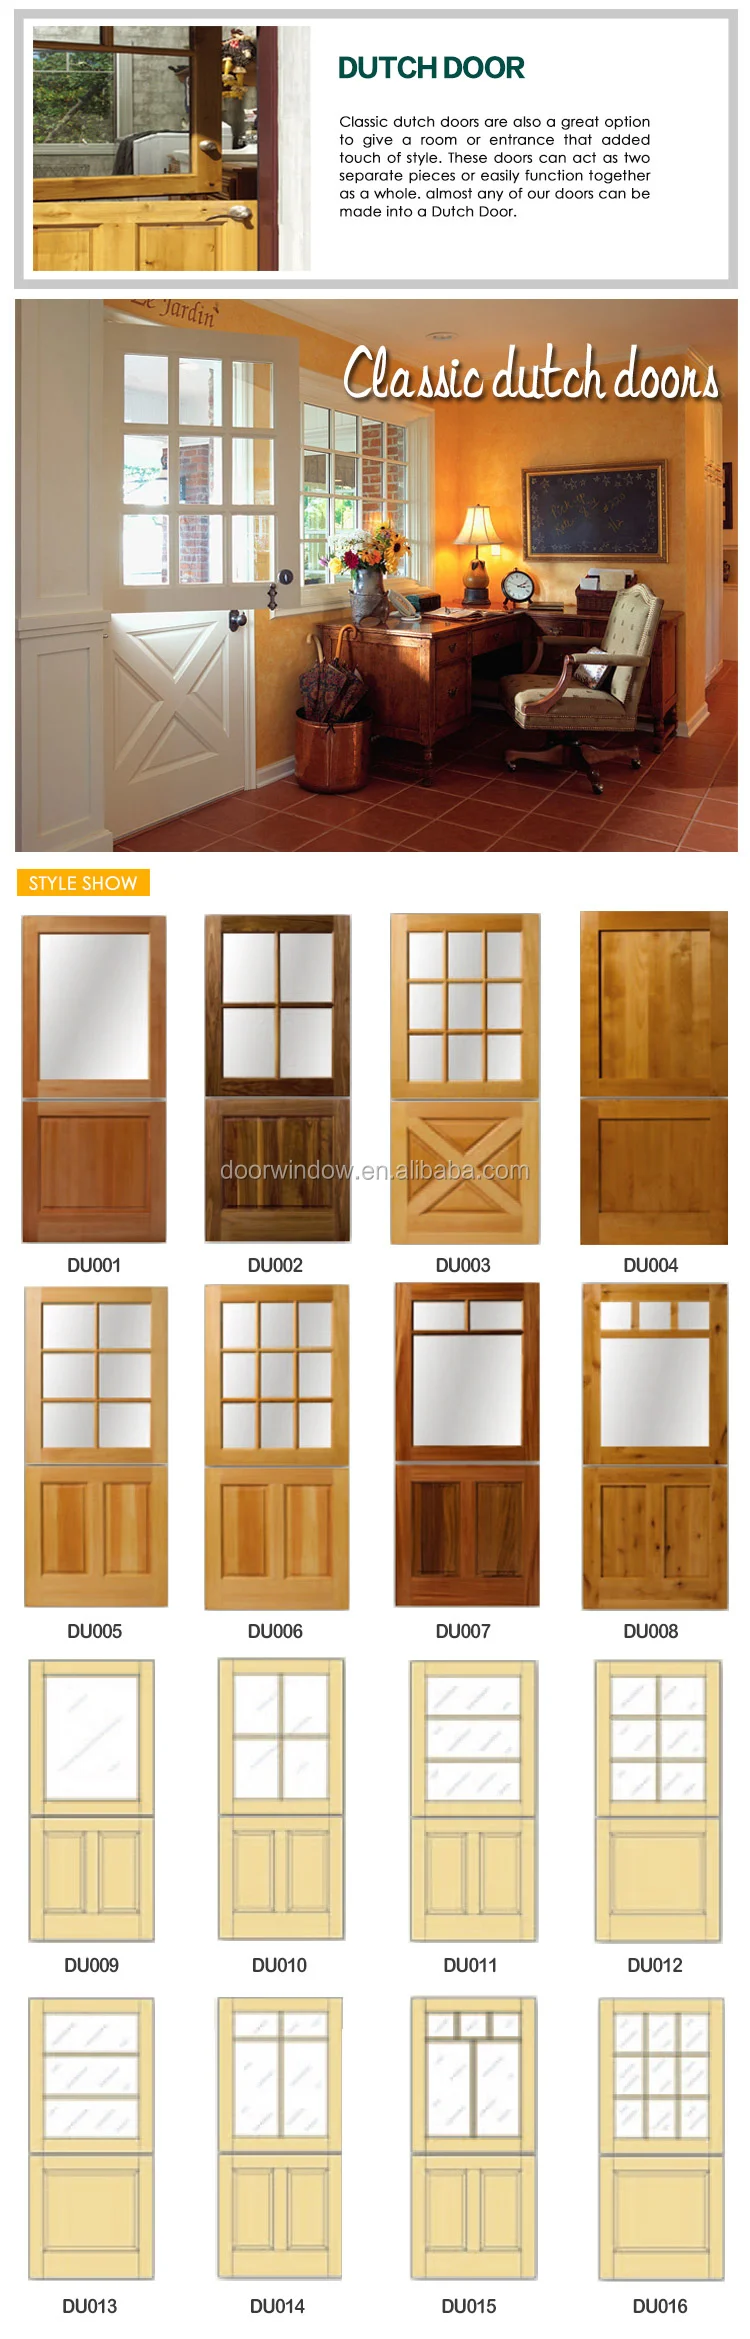 Functional latest design wooden doors half door dutch door for entry gate